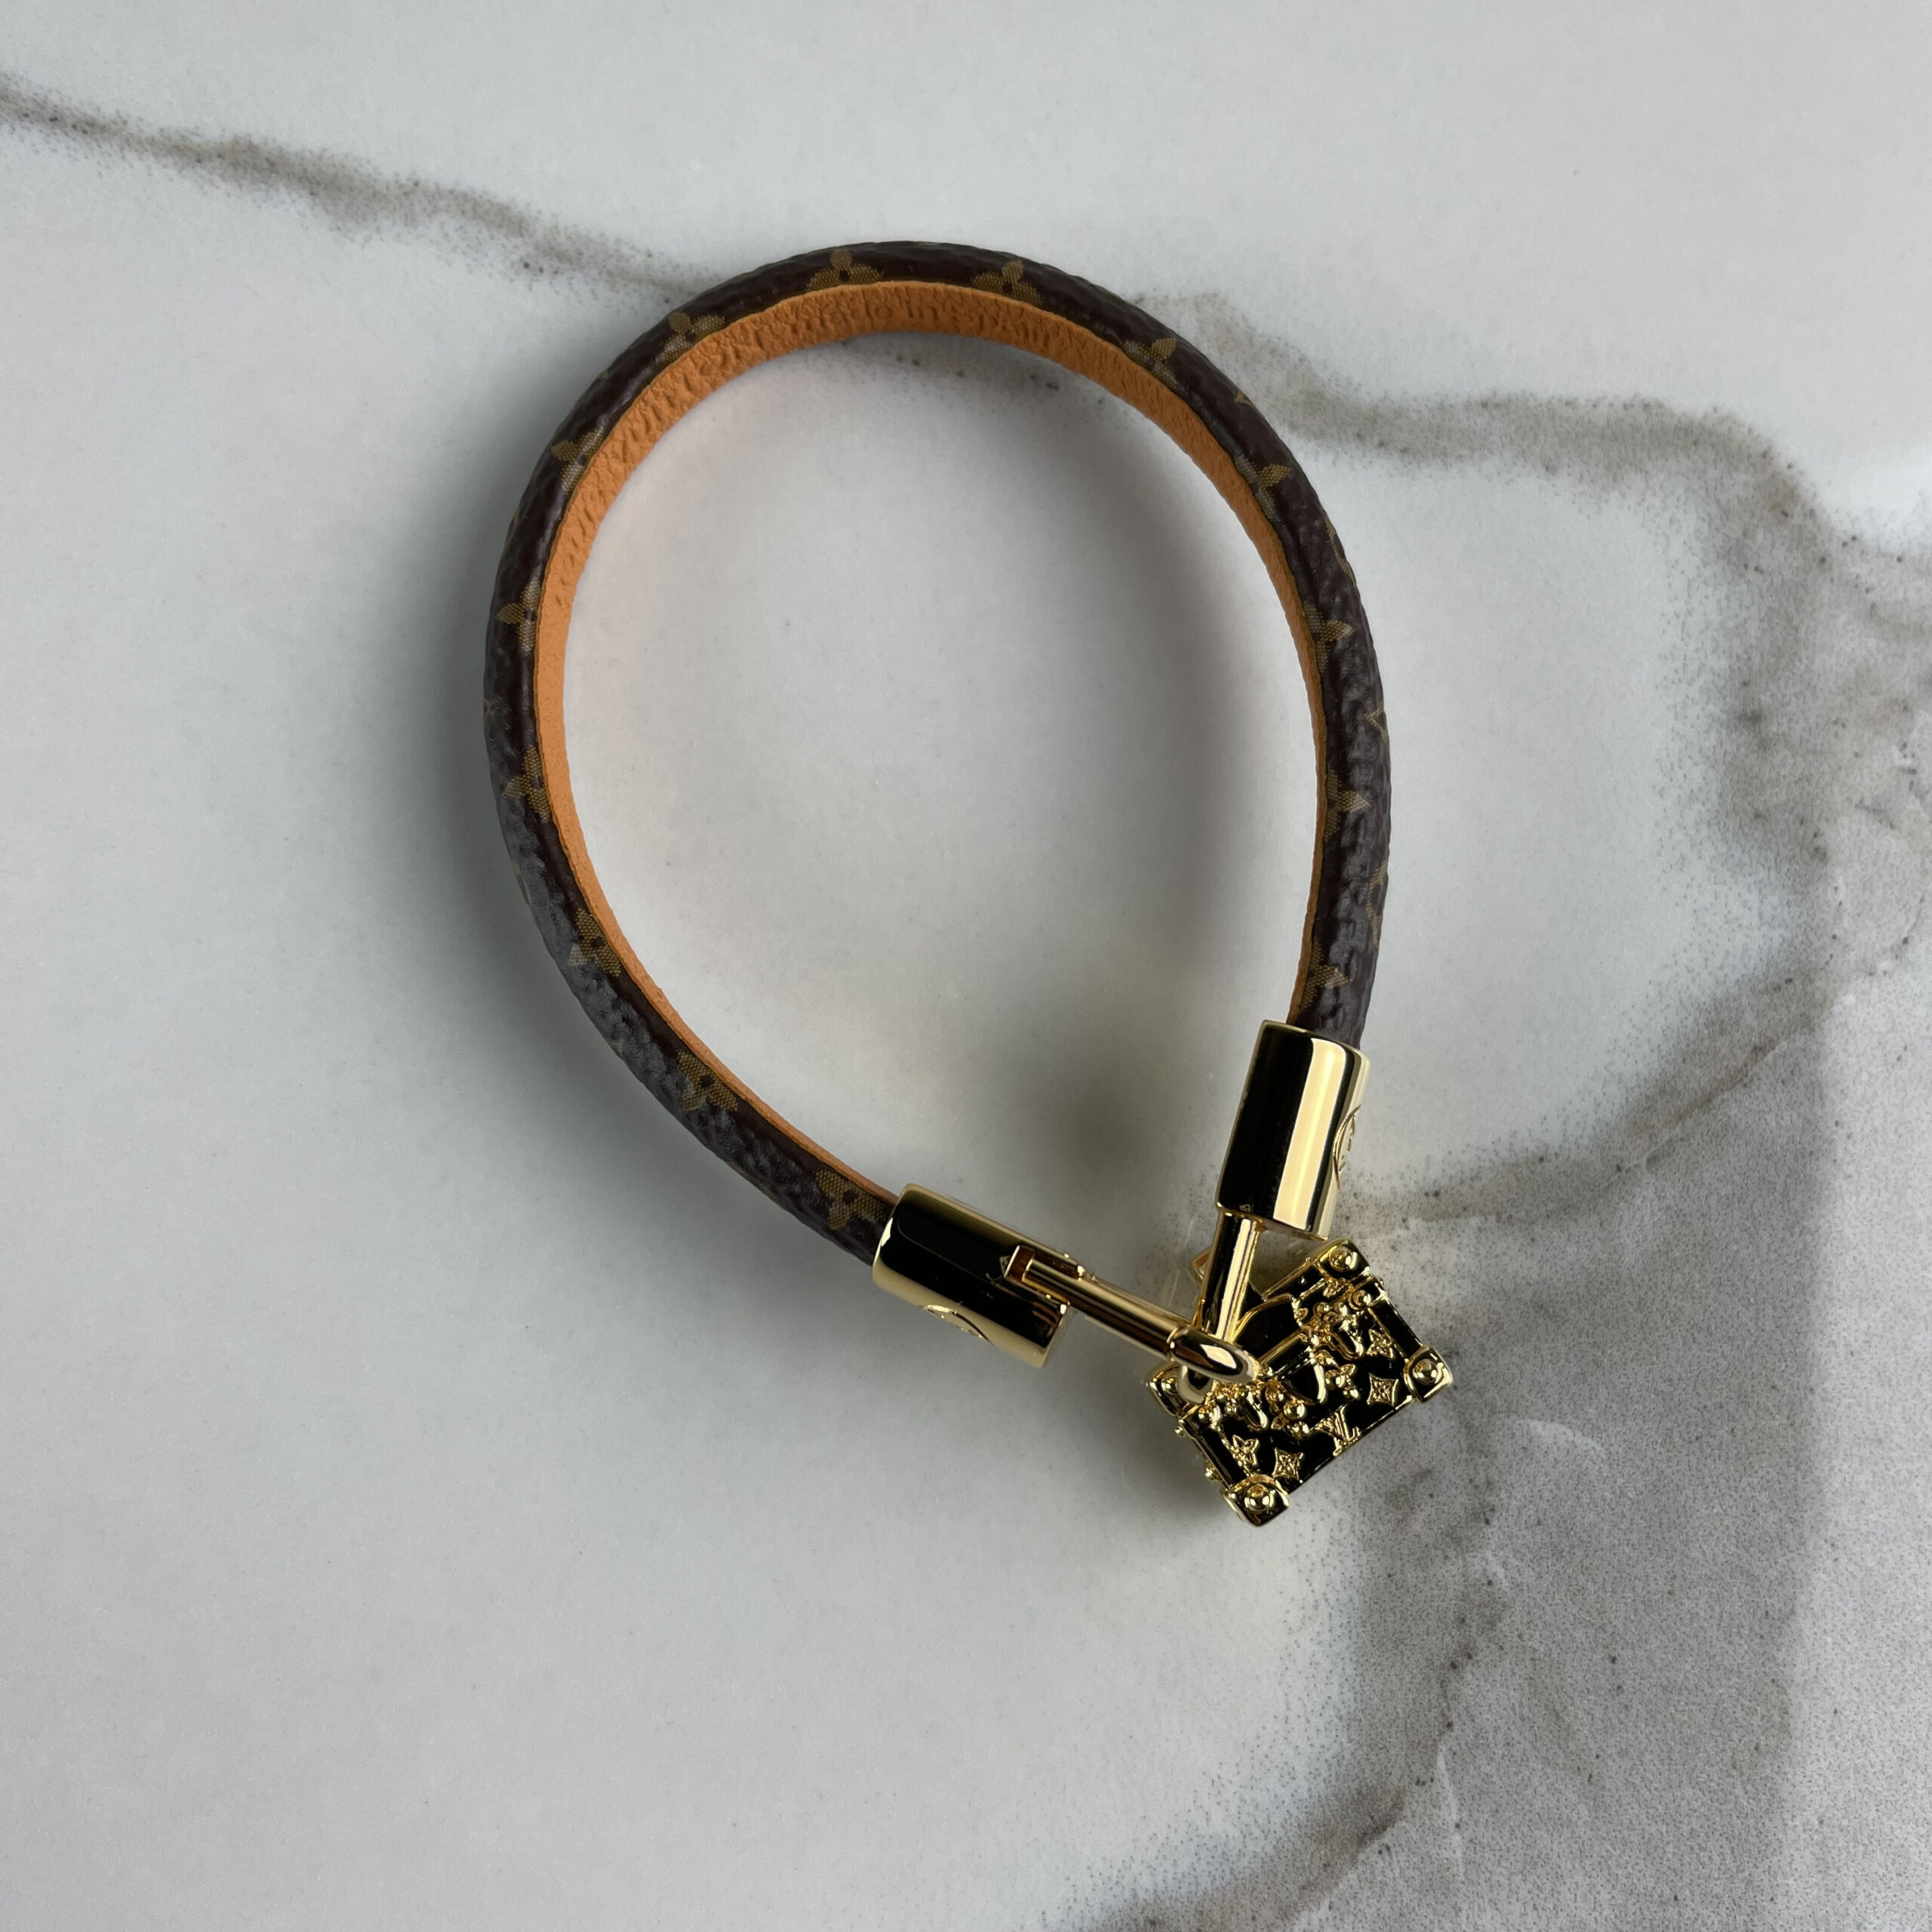 Louis Vuitton Silver and Black Charm Bracelet